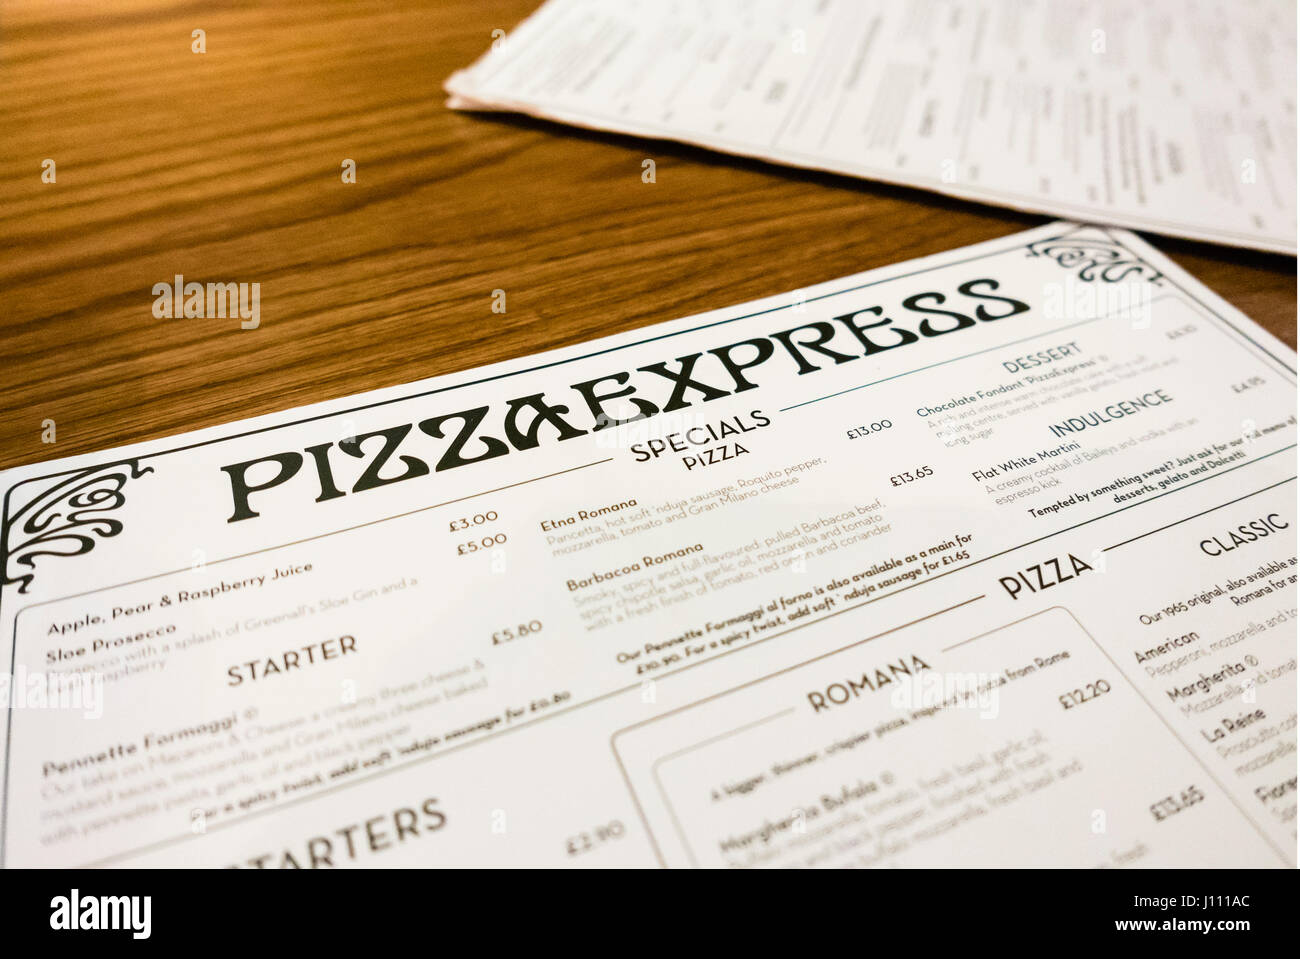 Pizza Express menu sur une table Banque D'Images